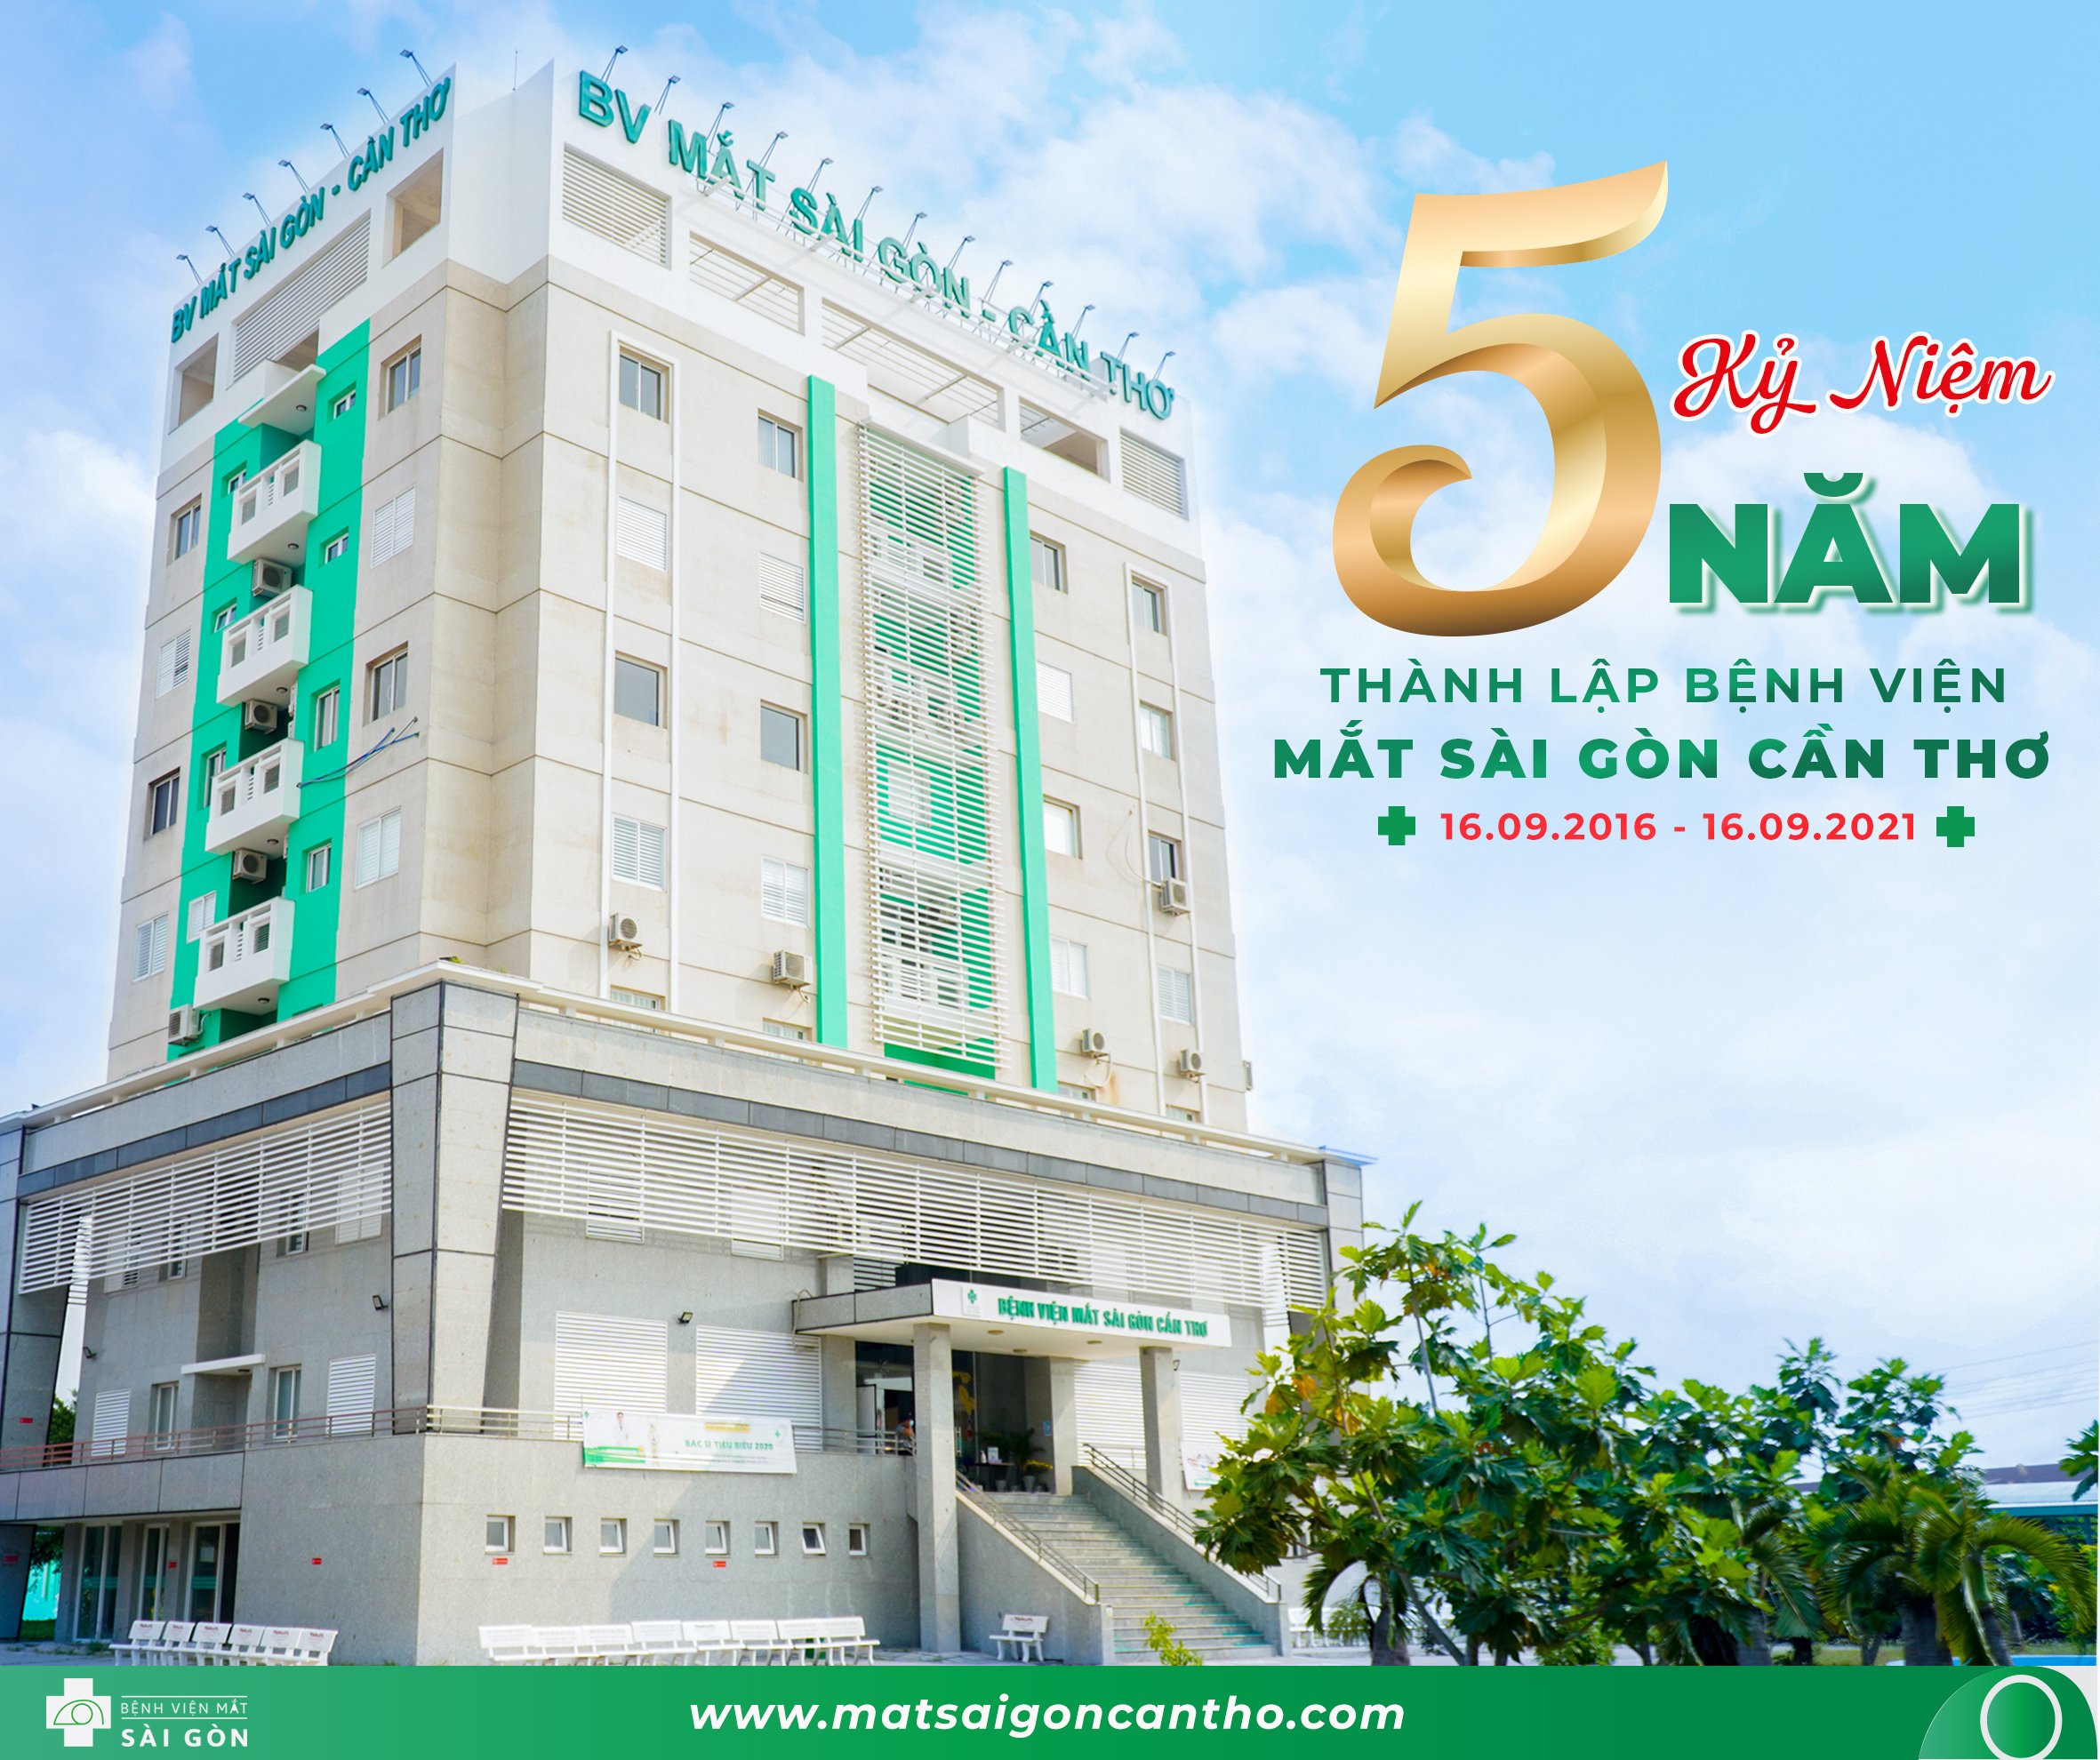 Bệnh viện Mắt Sài Gòn Cần Thơ tri ân khách hàng nhân dịp 5 năm